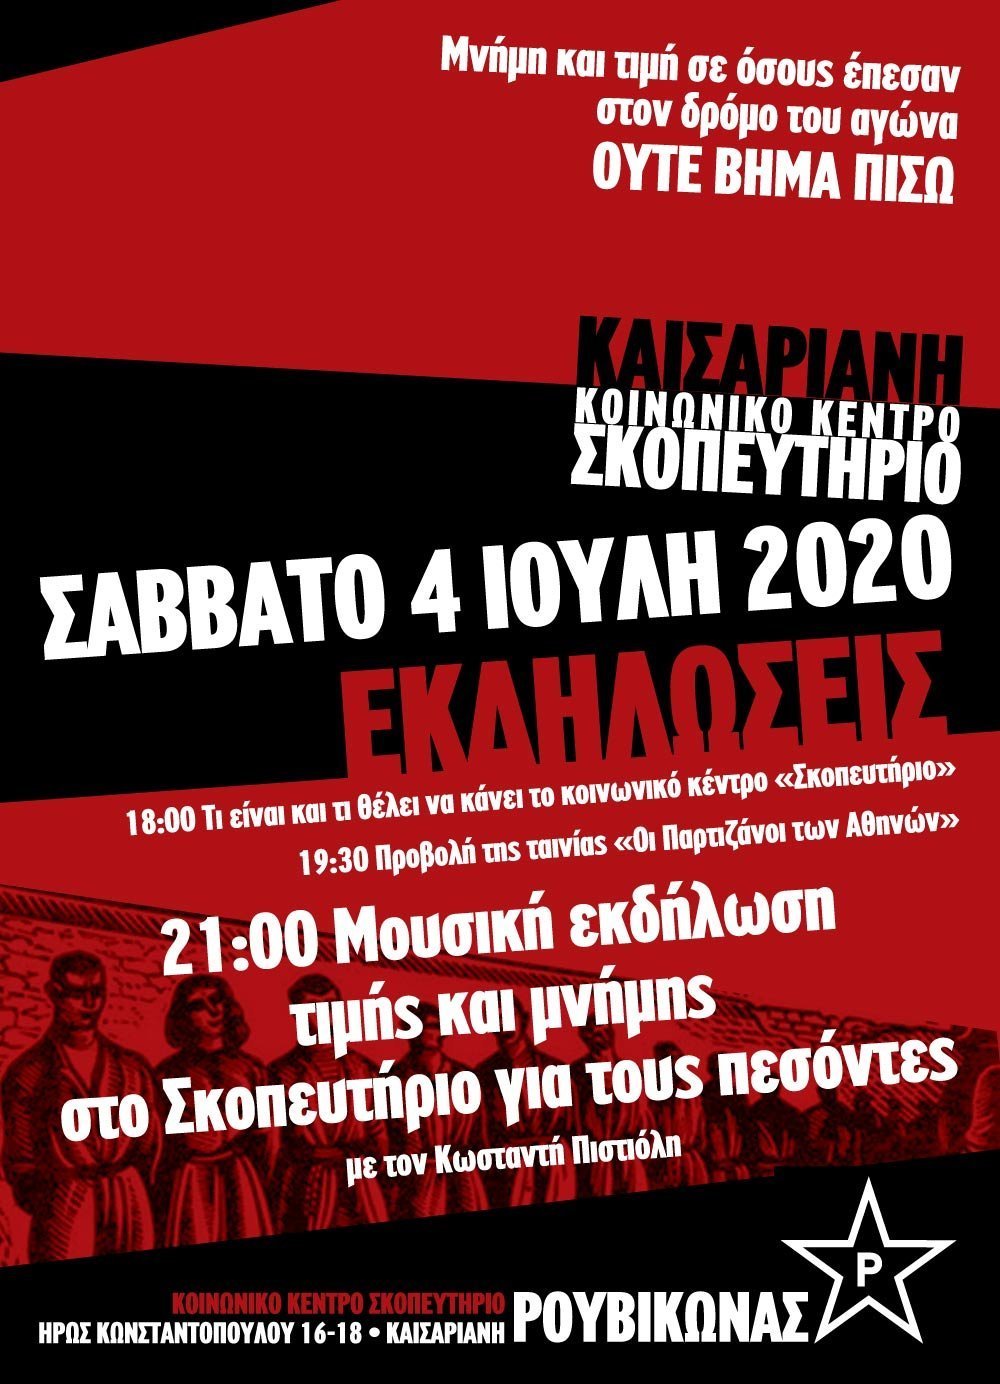 Μουσική εκδήλωση μνήμης με τον Κ. Πιστιόλη + προβολή “Οι Παρτιζάνοι των Αθηνών”